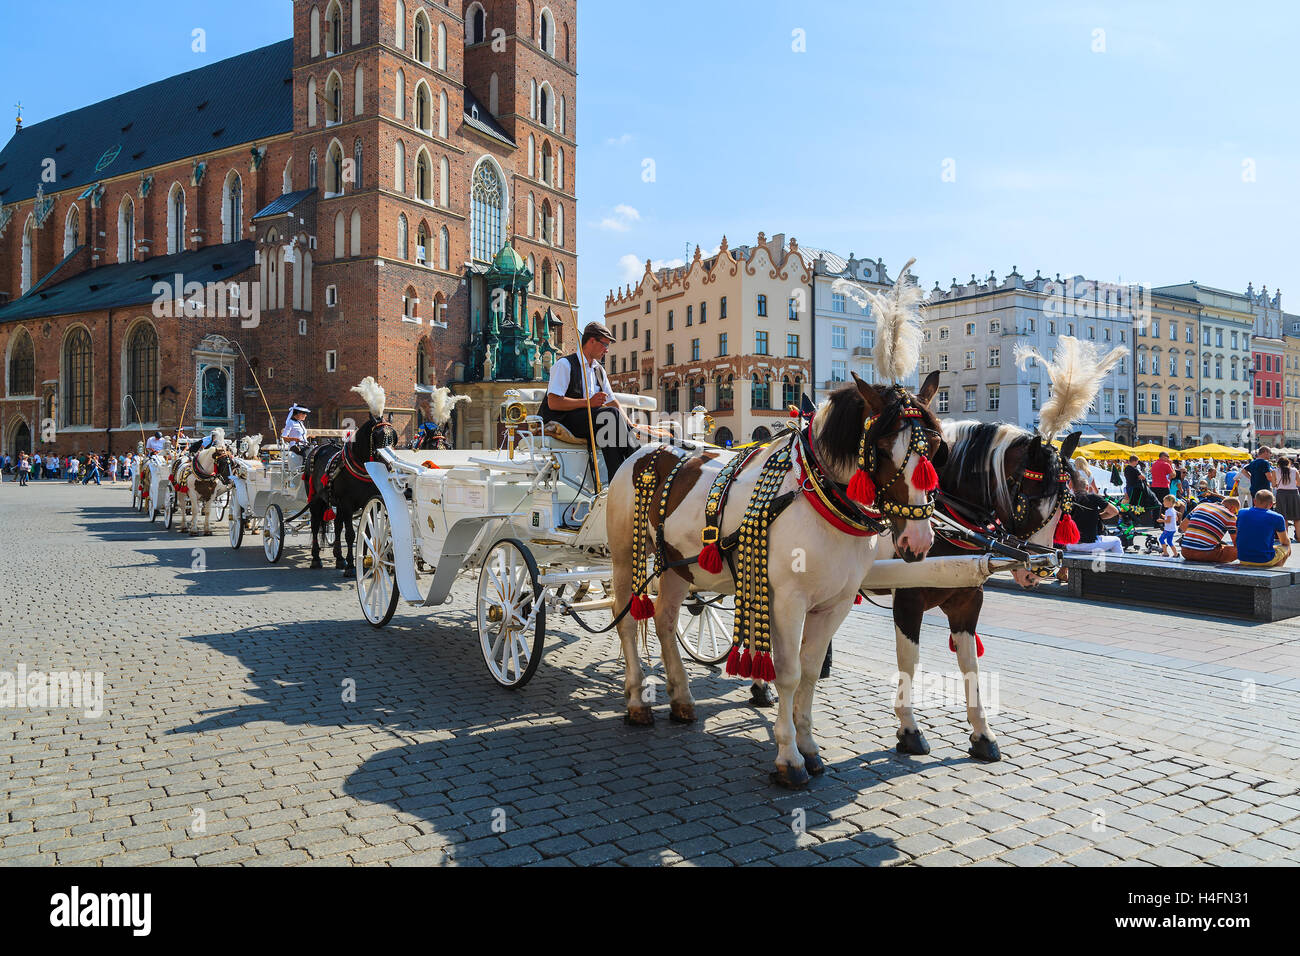 Cracovie, Pologne - 7 SEP 2014 : voitures à cheval en face de l'église Mariacki sur la place principale de la ville de Cracovie. Prendre un tour de cheval en calèche est très populaire parmi les touristes visitant Cracovie. Banque D'Images